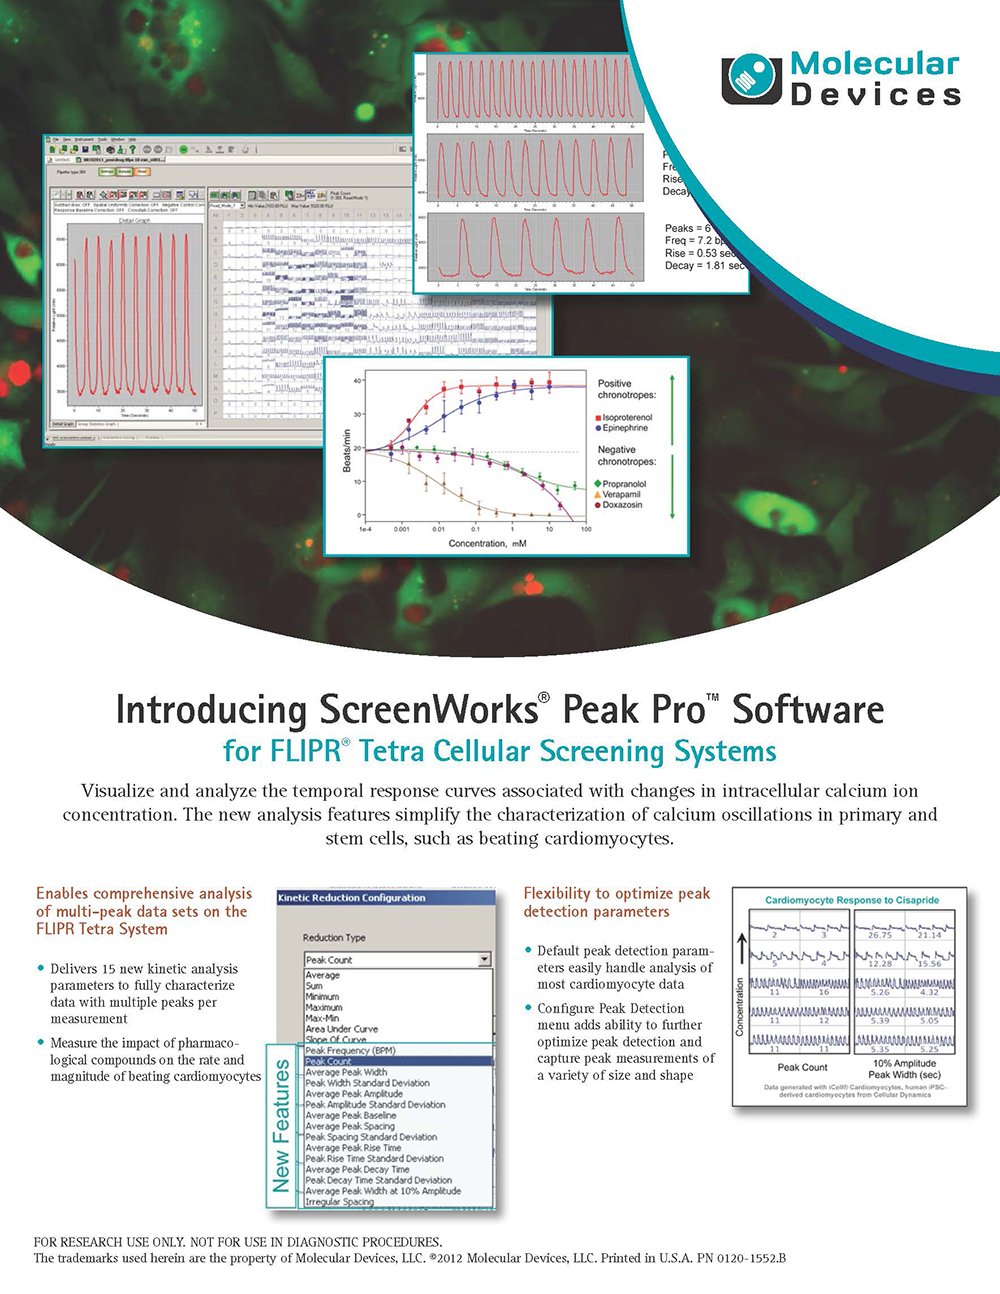 FLIPR TETRAのソフトScreenWorks v3.2に特殊な解析機能が追加できます。